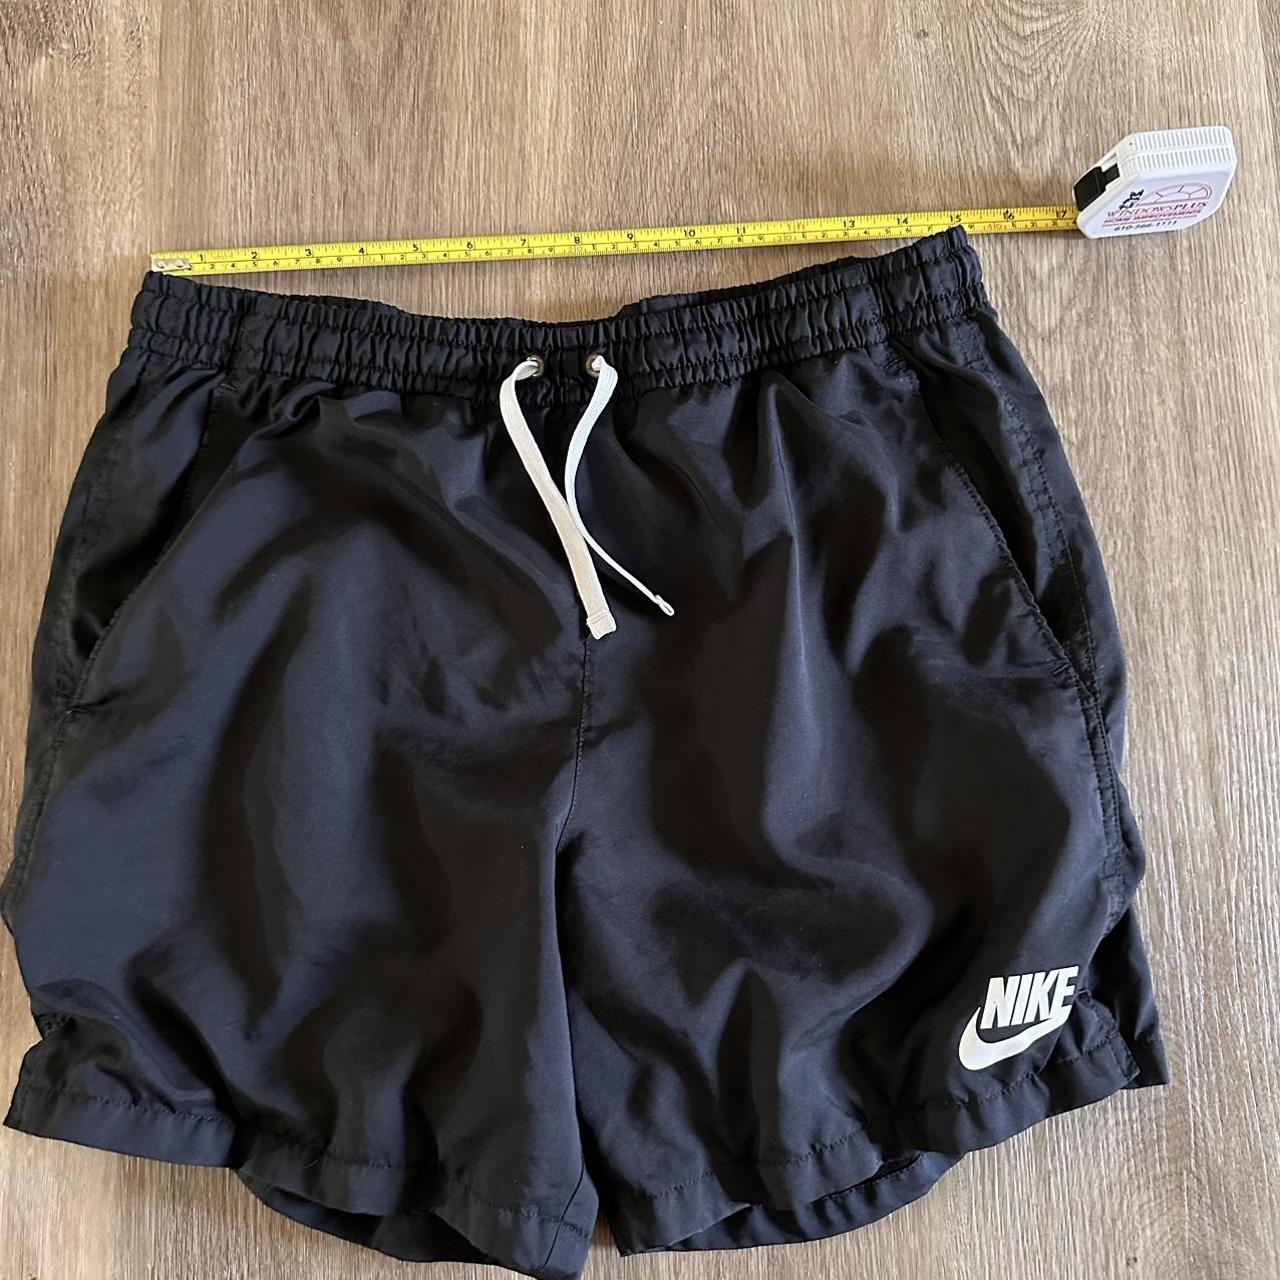 Nike shorts/swim shorts. Used. Size medium but fit... - Depop